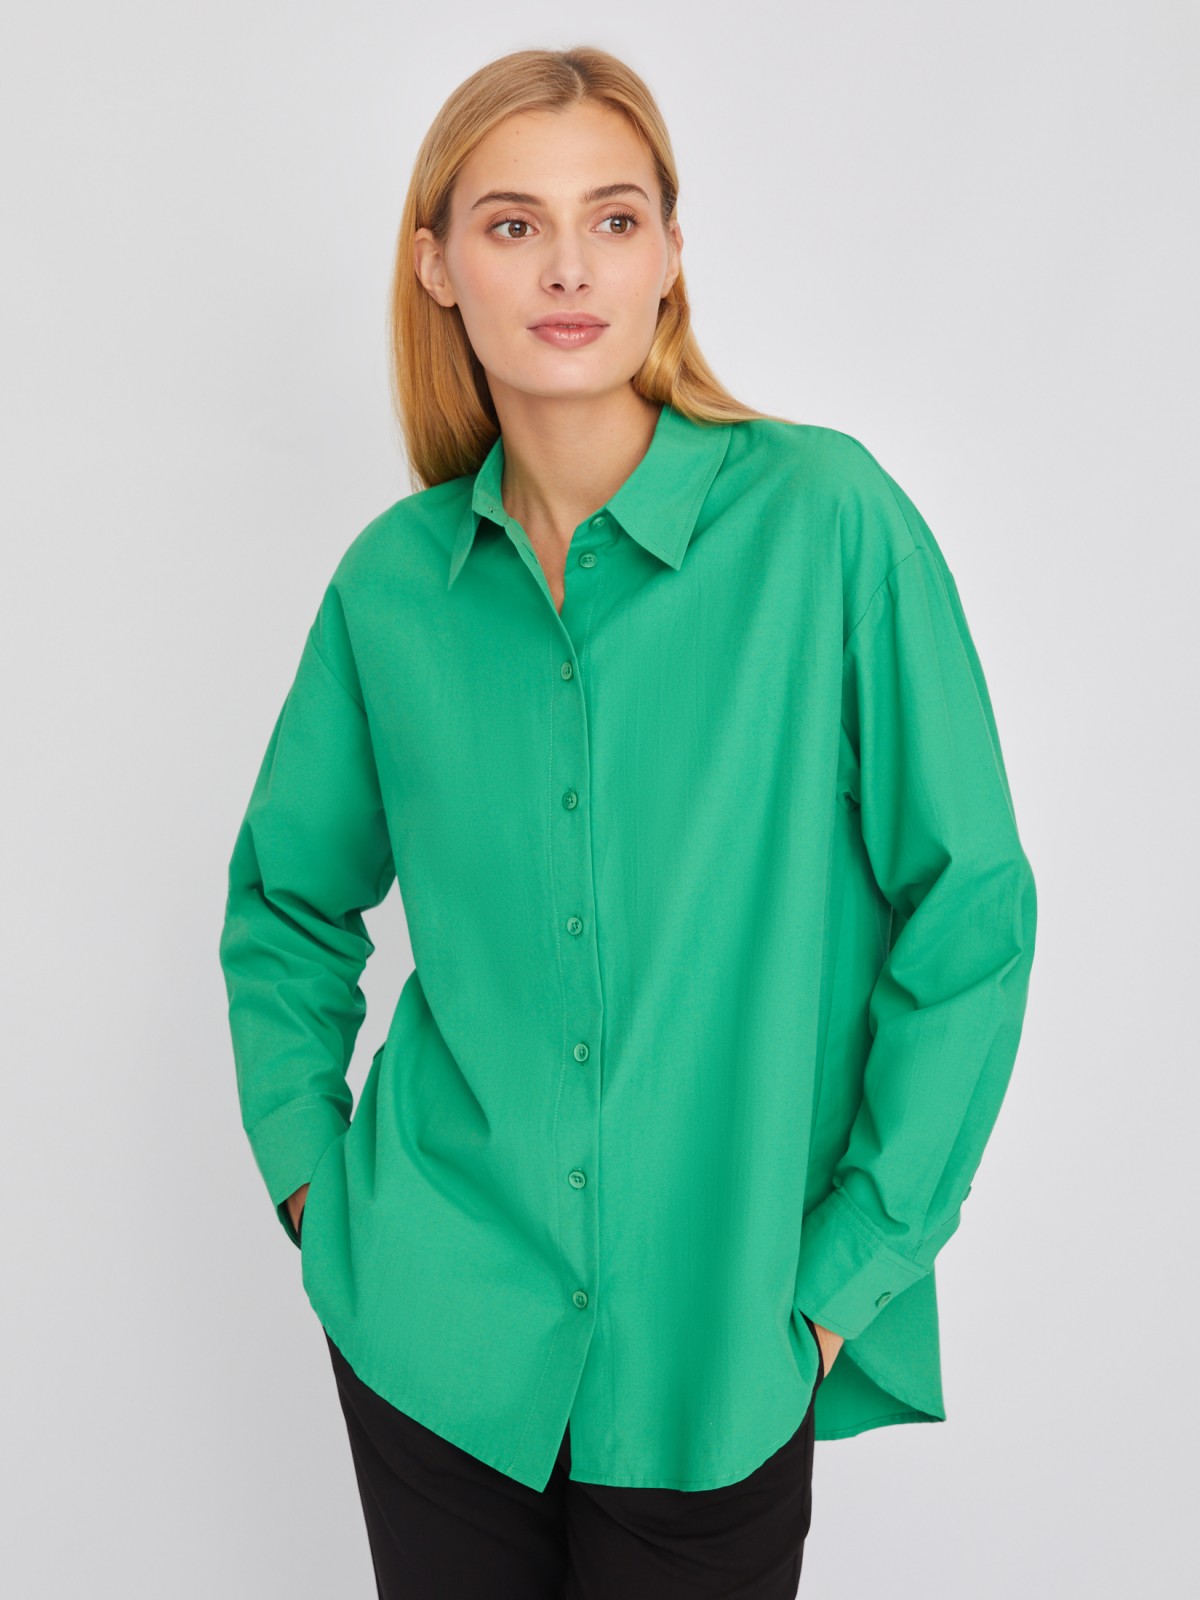 Рубашка свободного силуэта с длинным рукавом zolla 02411117Y553, цвет зеленый, размер XS - фото 1